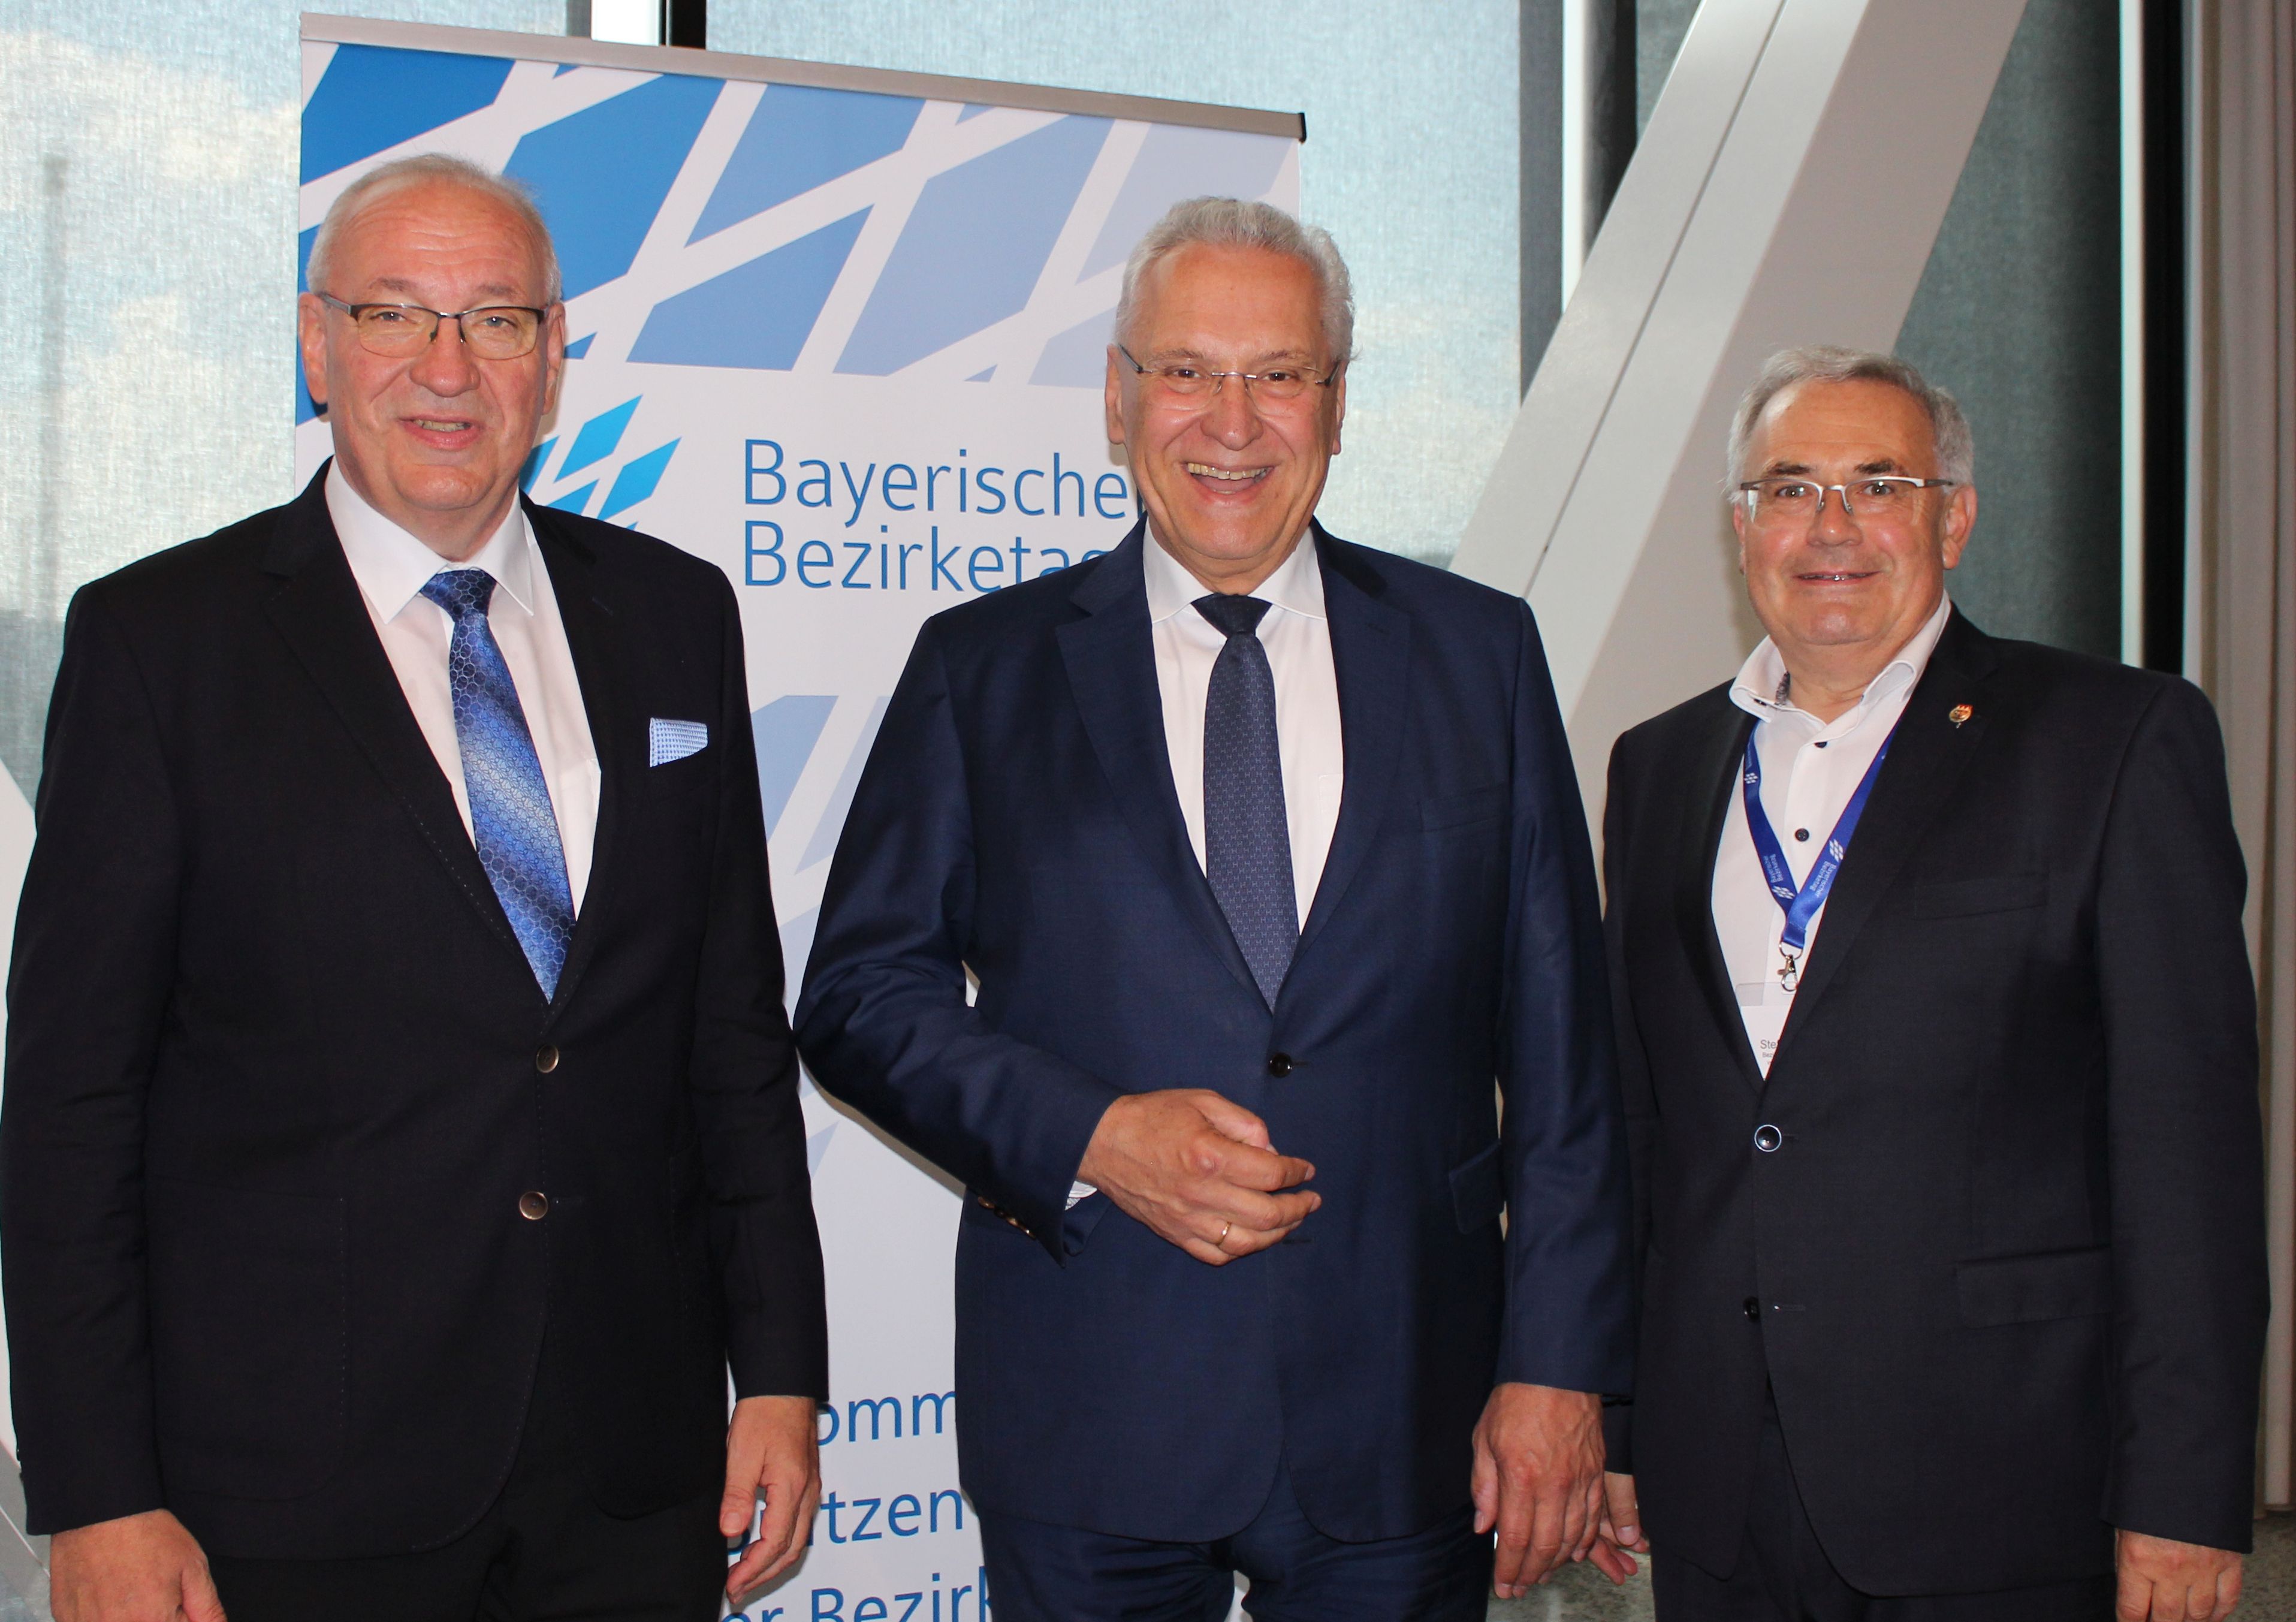 Zu sehen sind Verbandspräsident Franz Löffler, Staatsminister Joachim Herrmann und Bezirkstagspräsident Stefan Funk